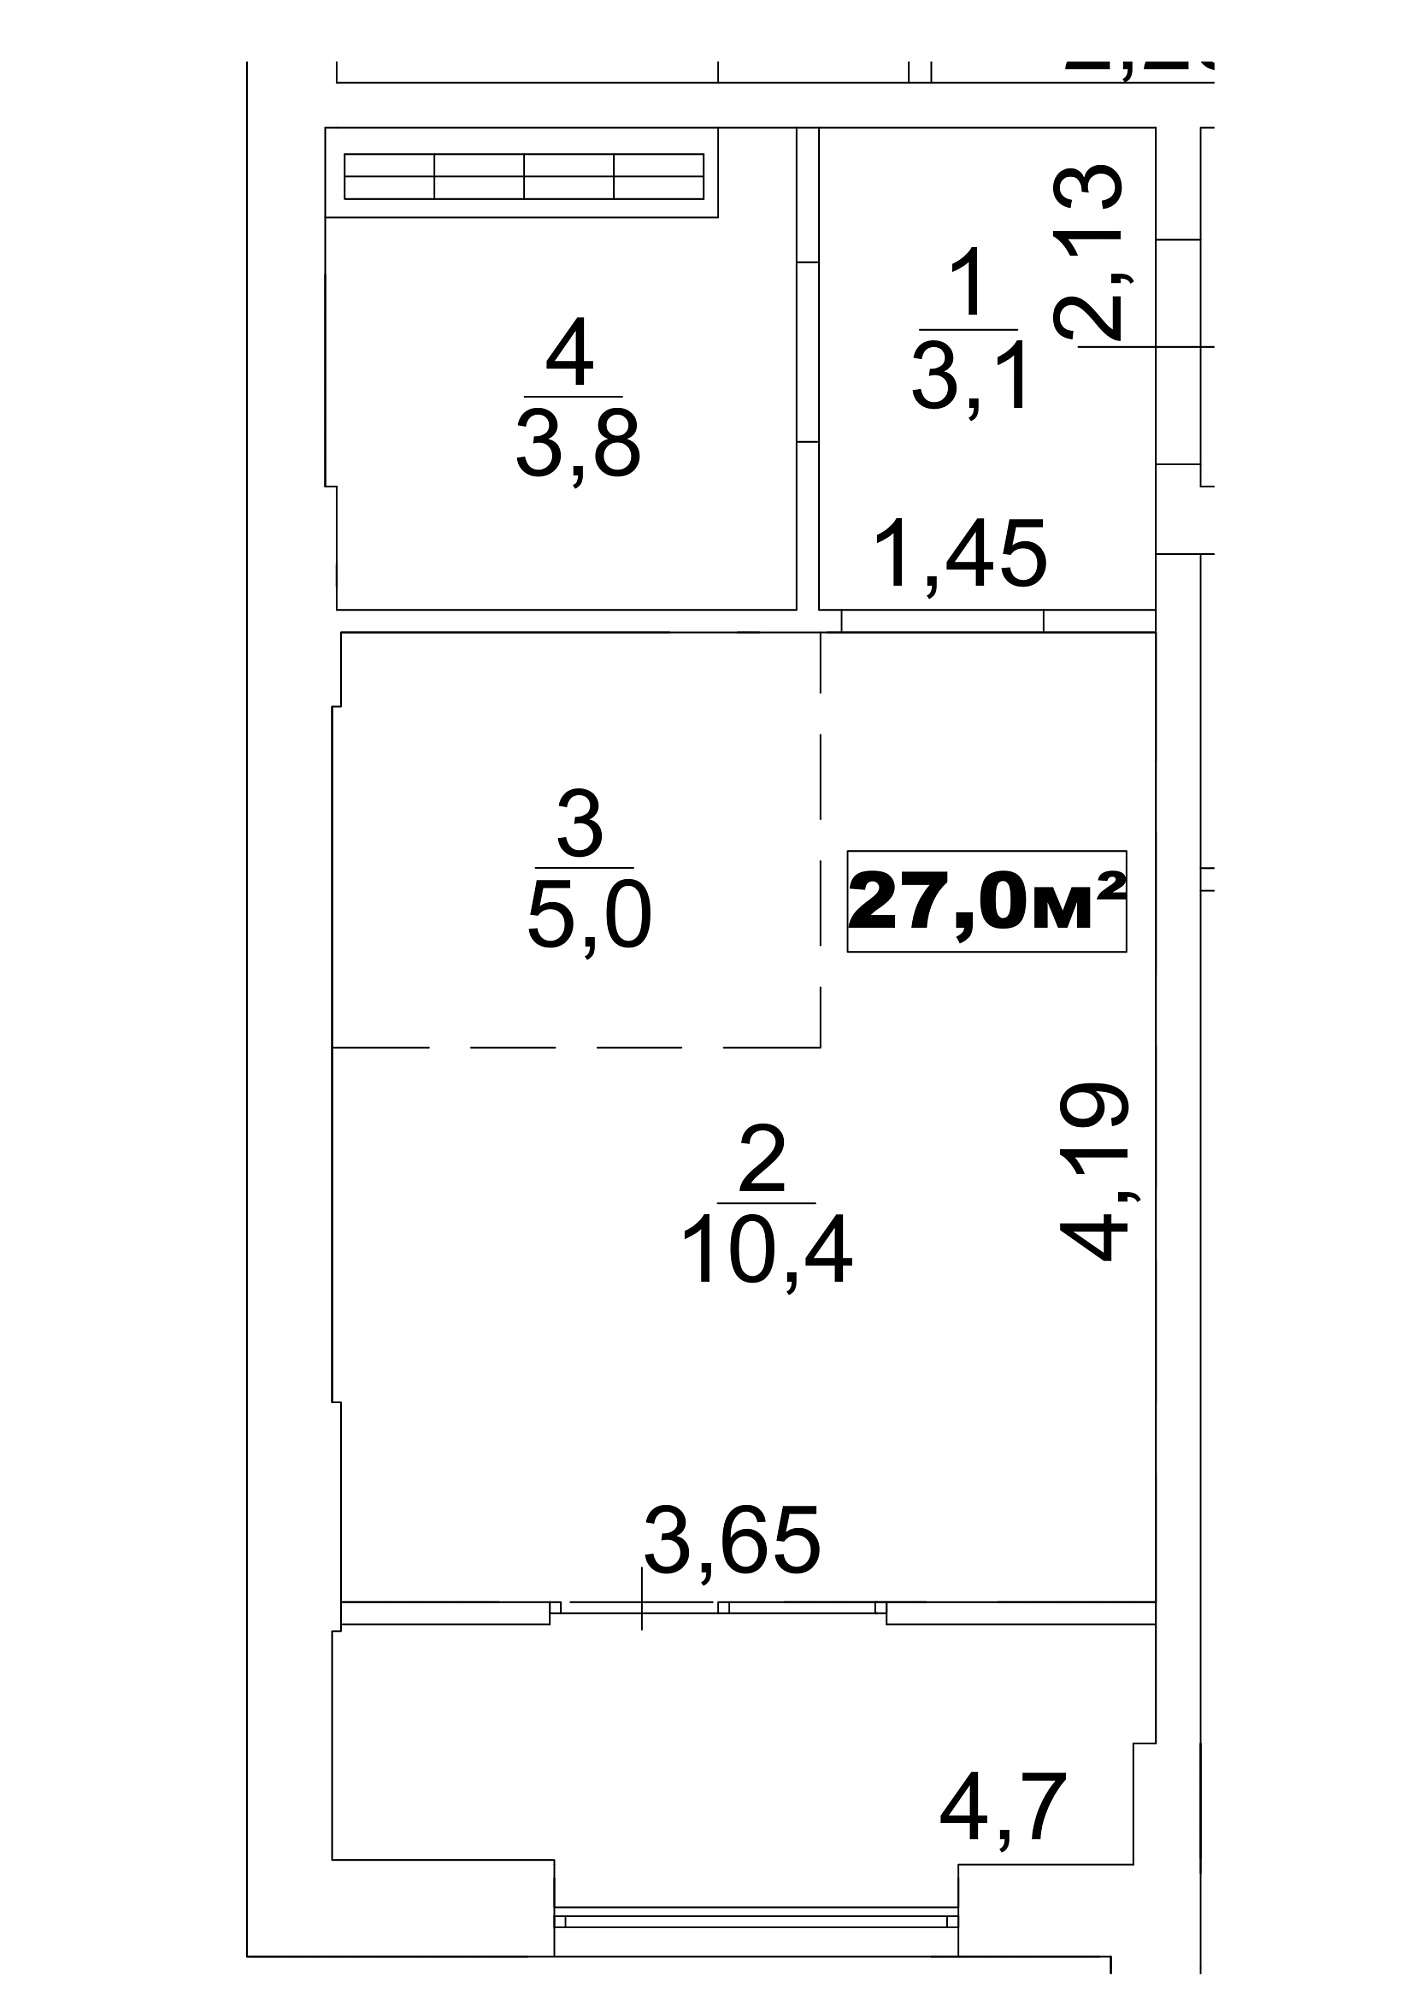 Планировка Smart-квартира площей 27м2, AB-13-09/0072а.